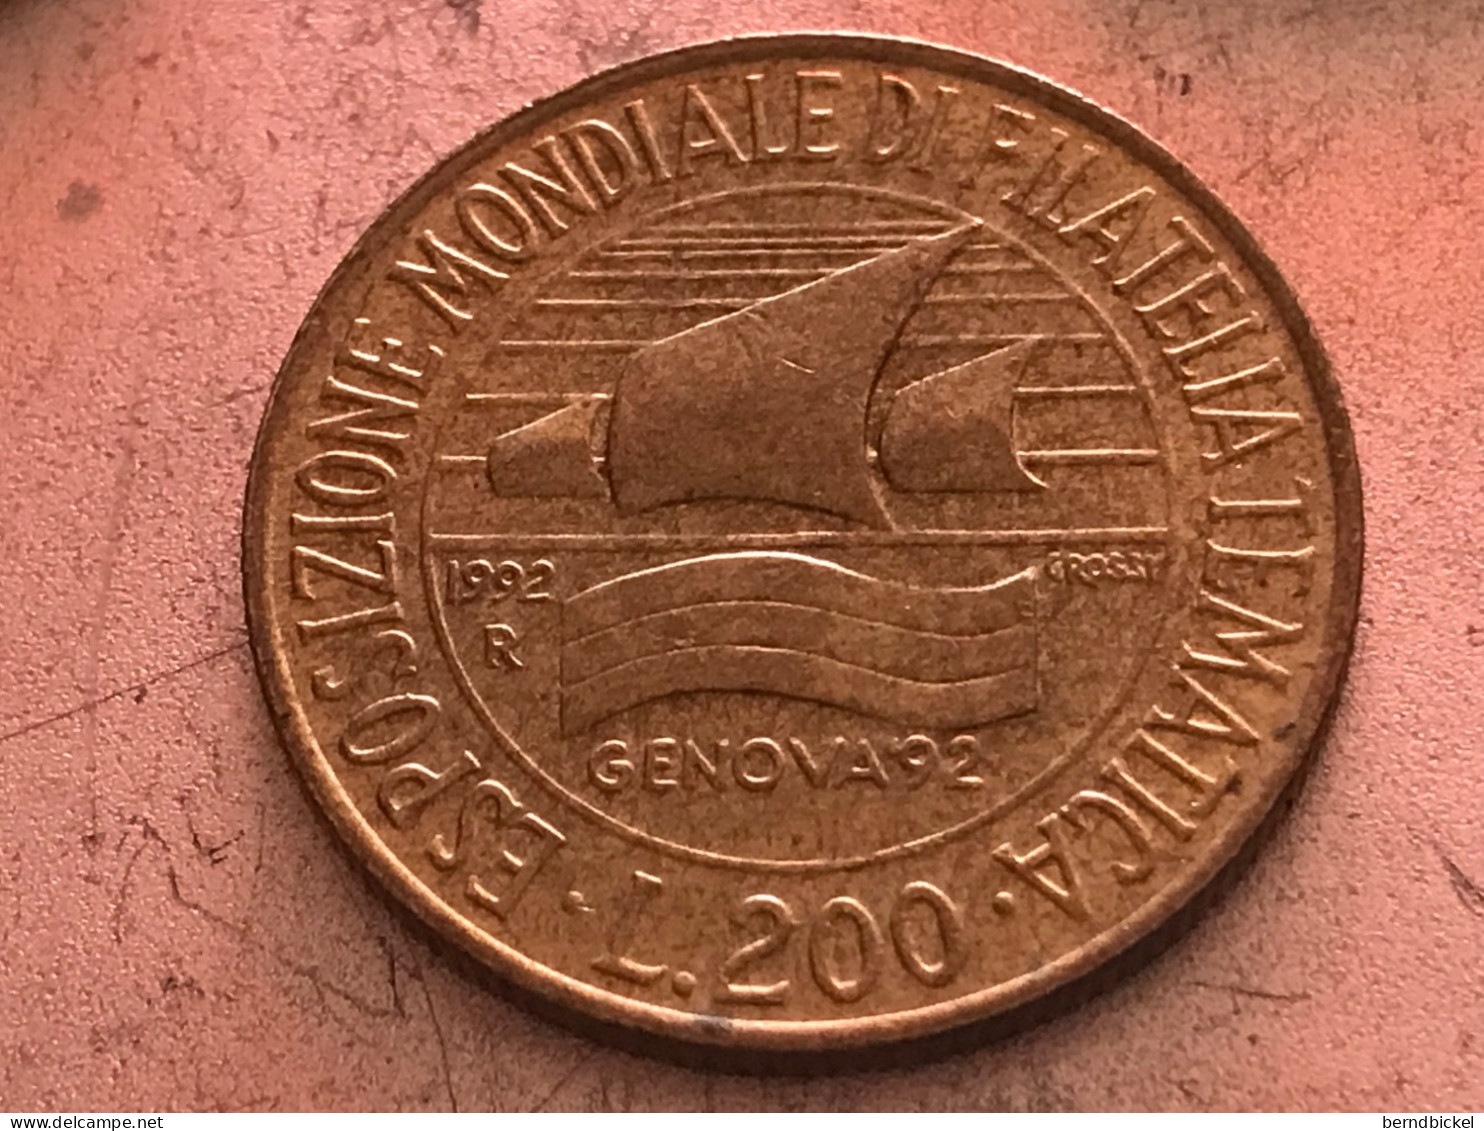 Münze Münzen Umlaufmünze Gedenkmünze Italien 200 Lire 1992 Briefmarkenausstellung Genua - Herdenking